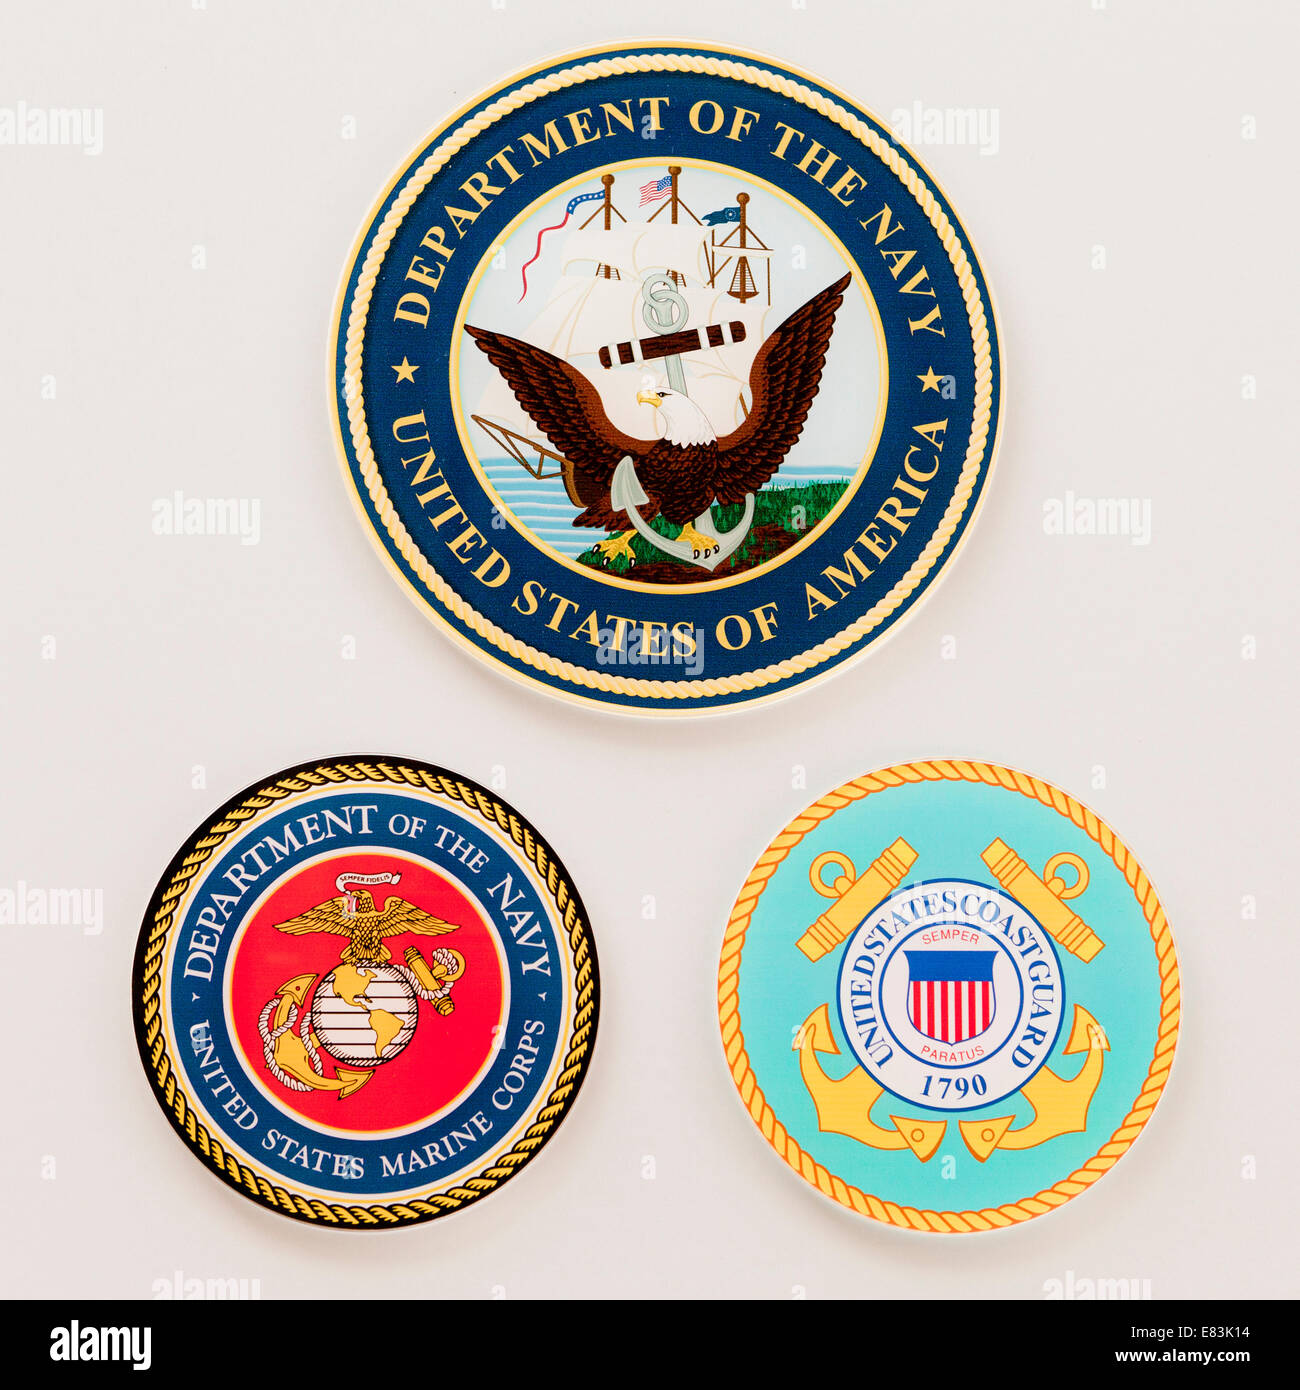 US Navy, Marine Corps, and Coastguard seals Stock Photo